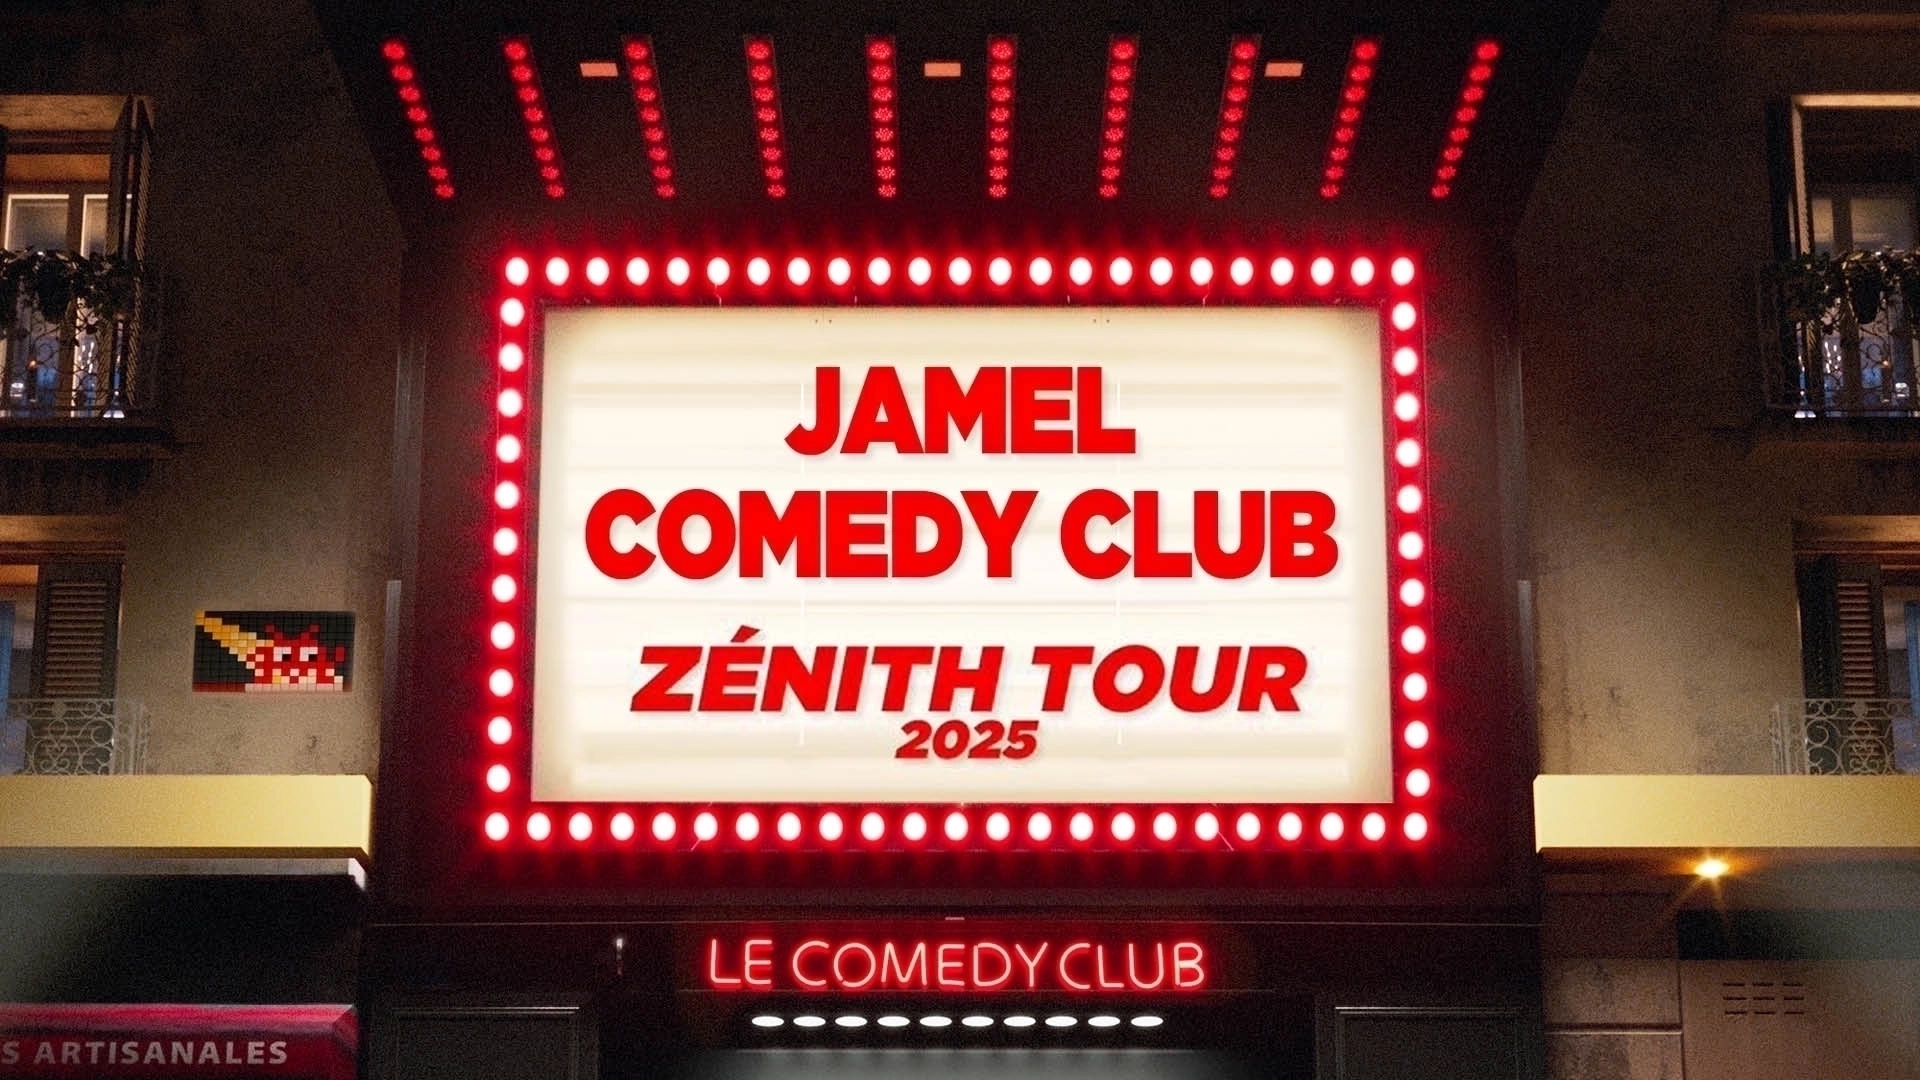 Jamel Comedy Club Zenith Tour 2025 en Palais des Sports - Dome de Paris Tickets